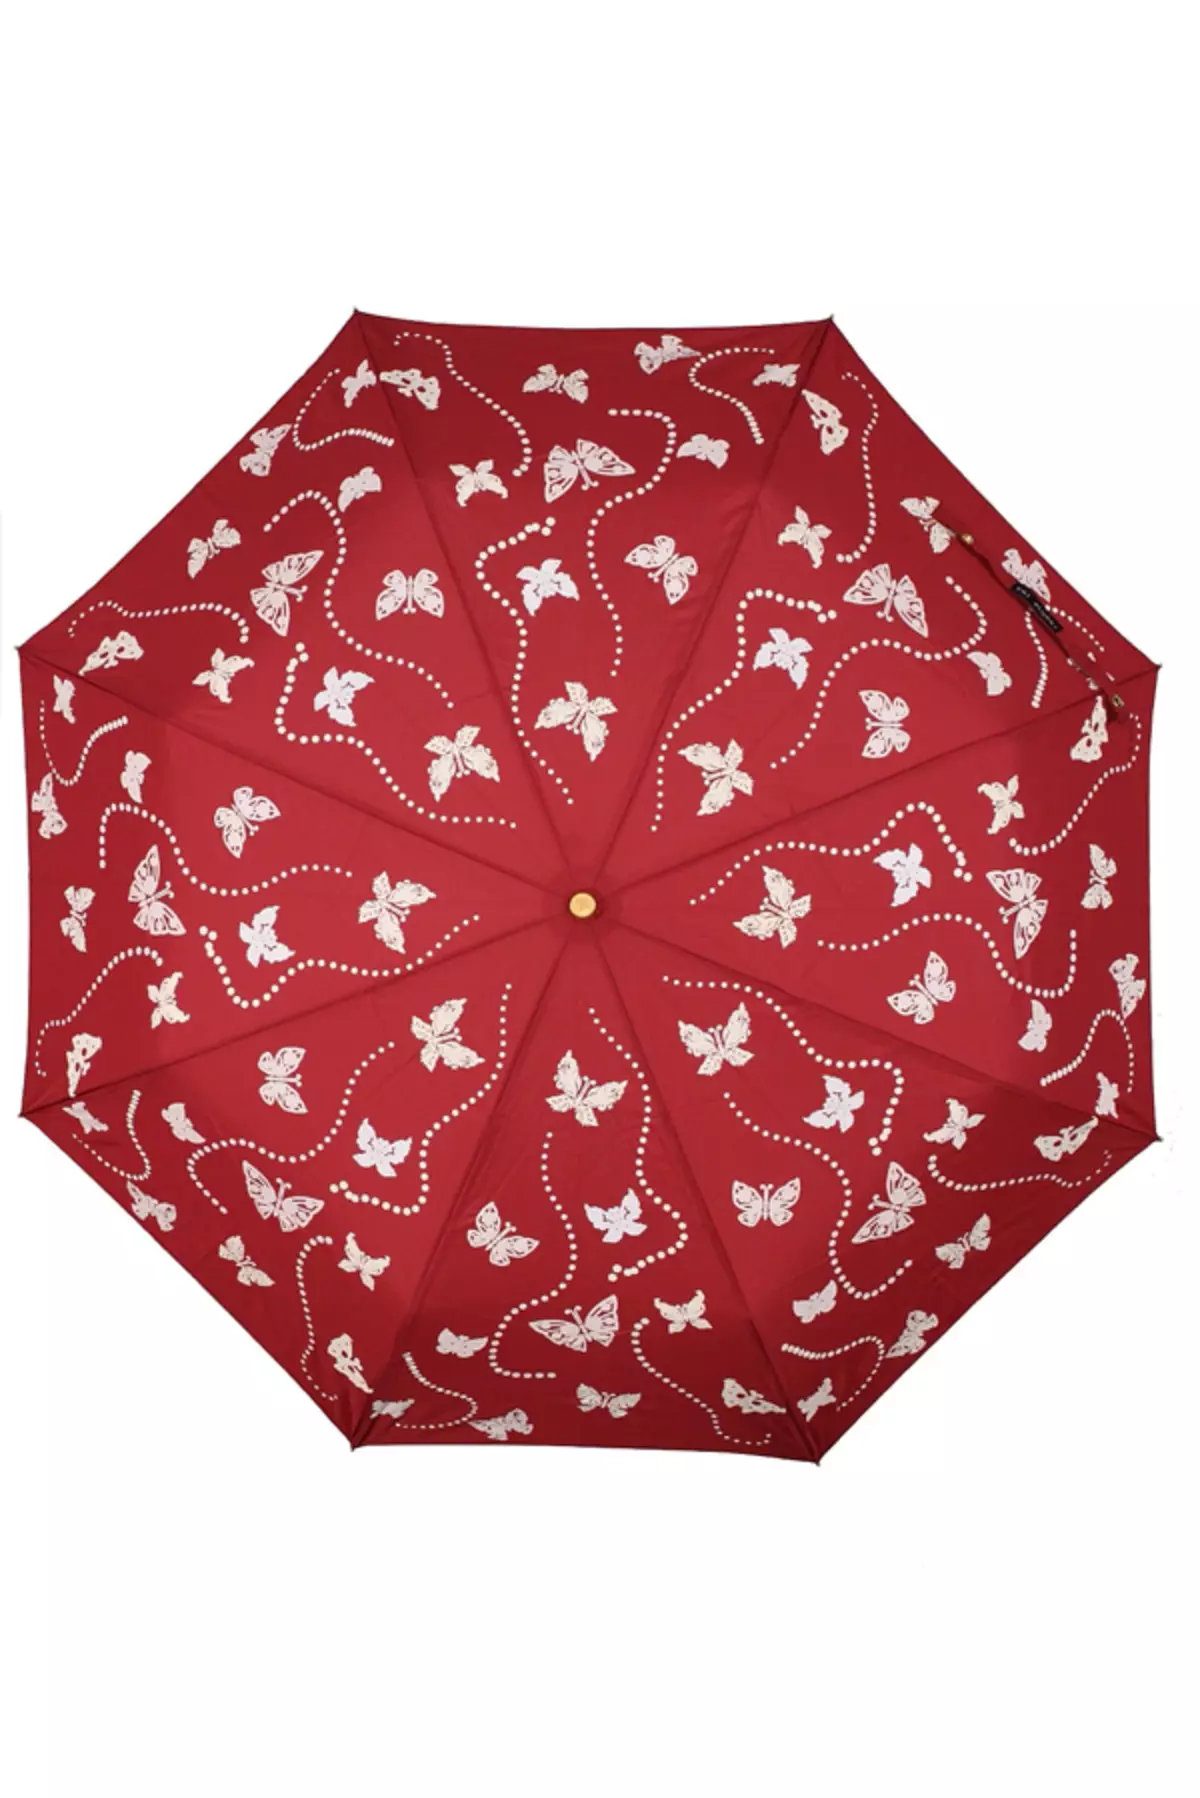 Sunbrella (linepe tse 72): Basali ba bopalai ba purwork upbrella-cane 15238_57